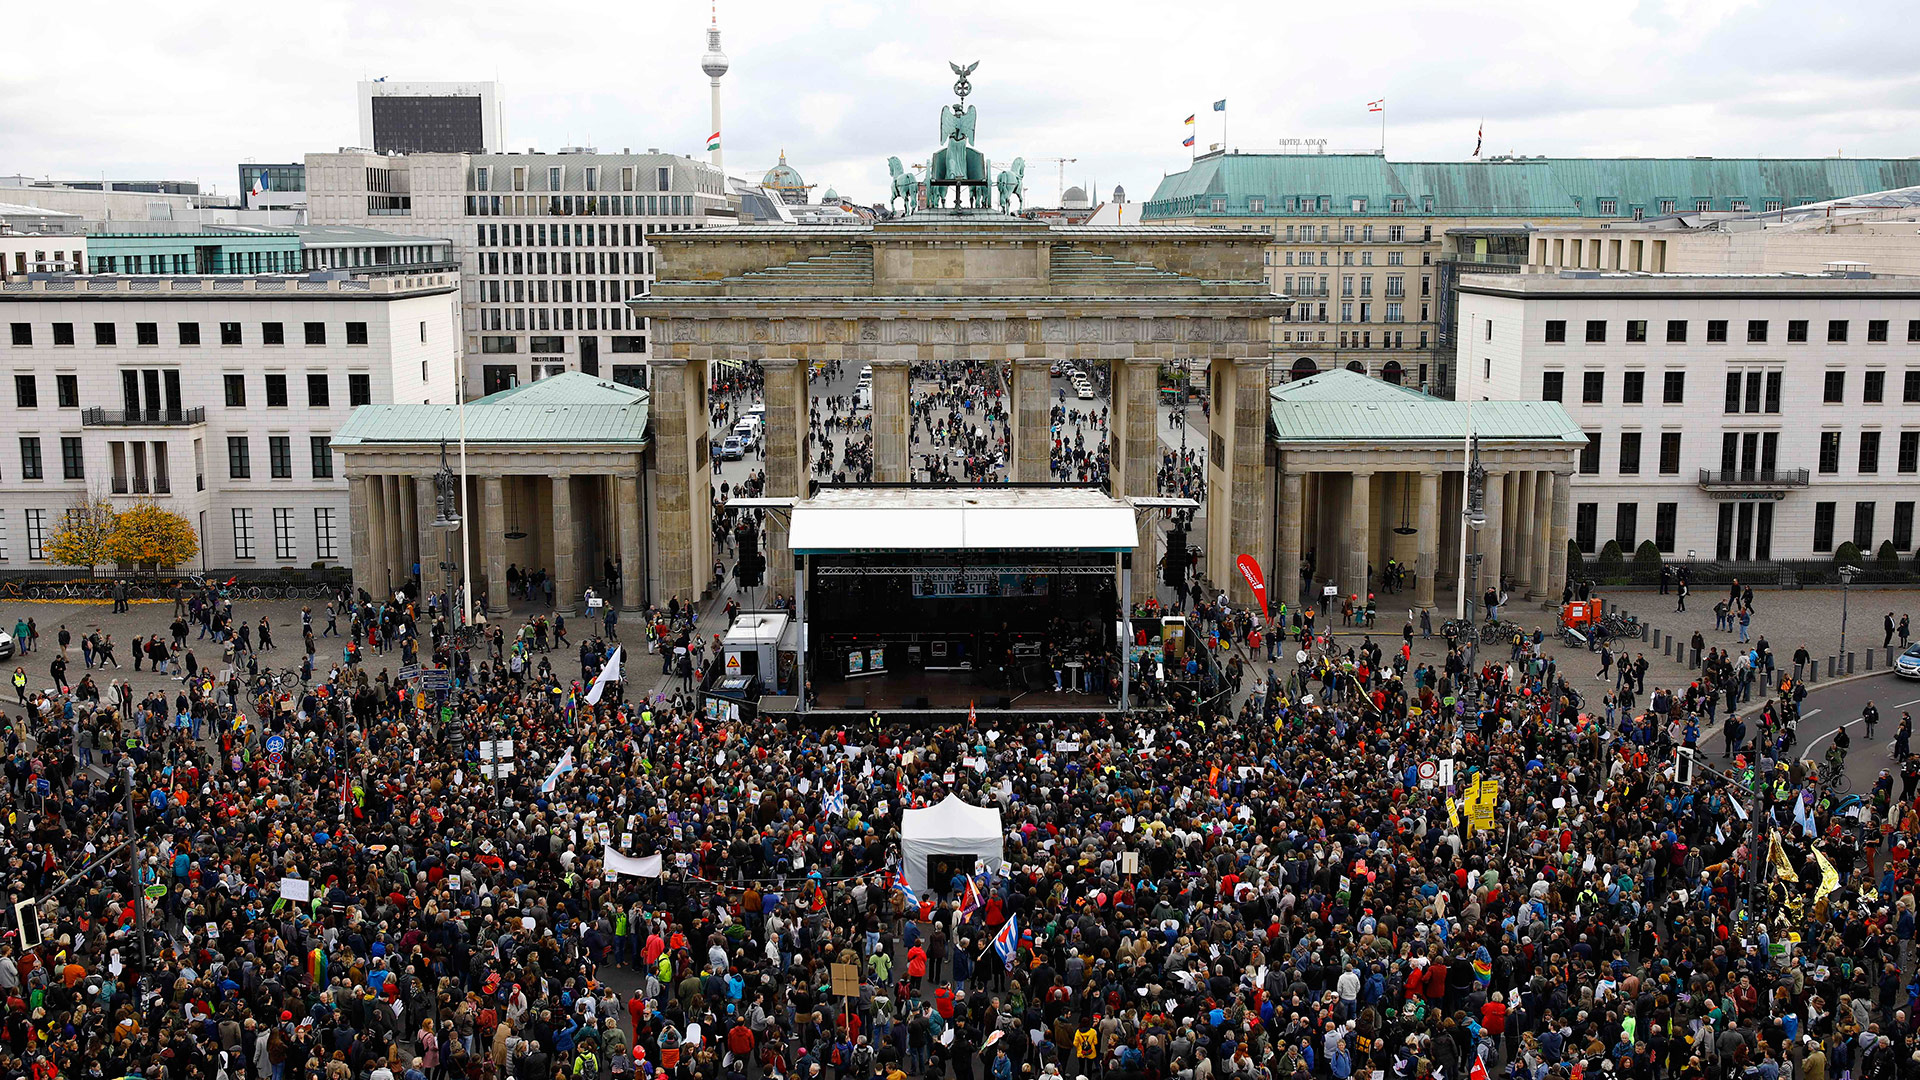 Miles de personas protestan en Berlín por la llegada de la ultraderecha al Parlamento alemán